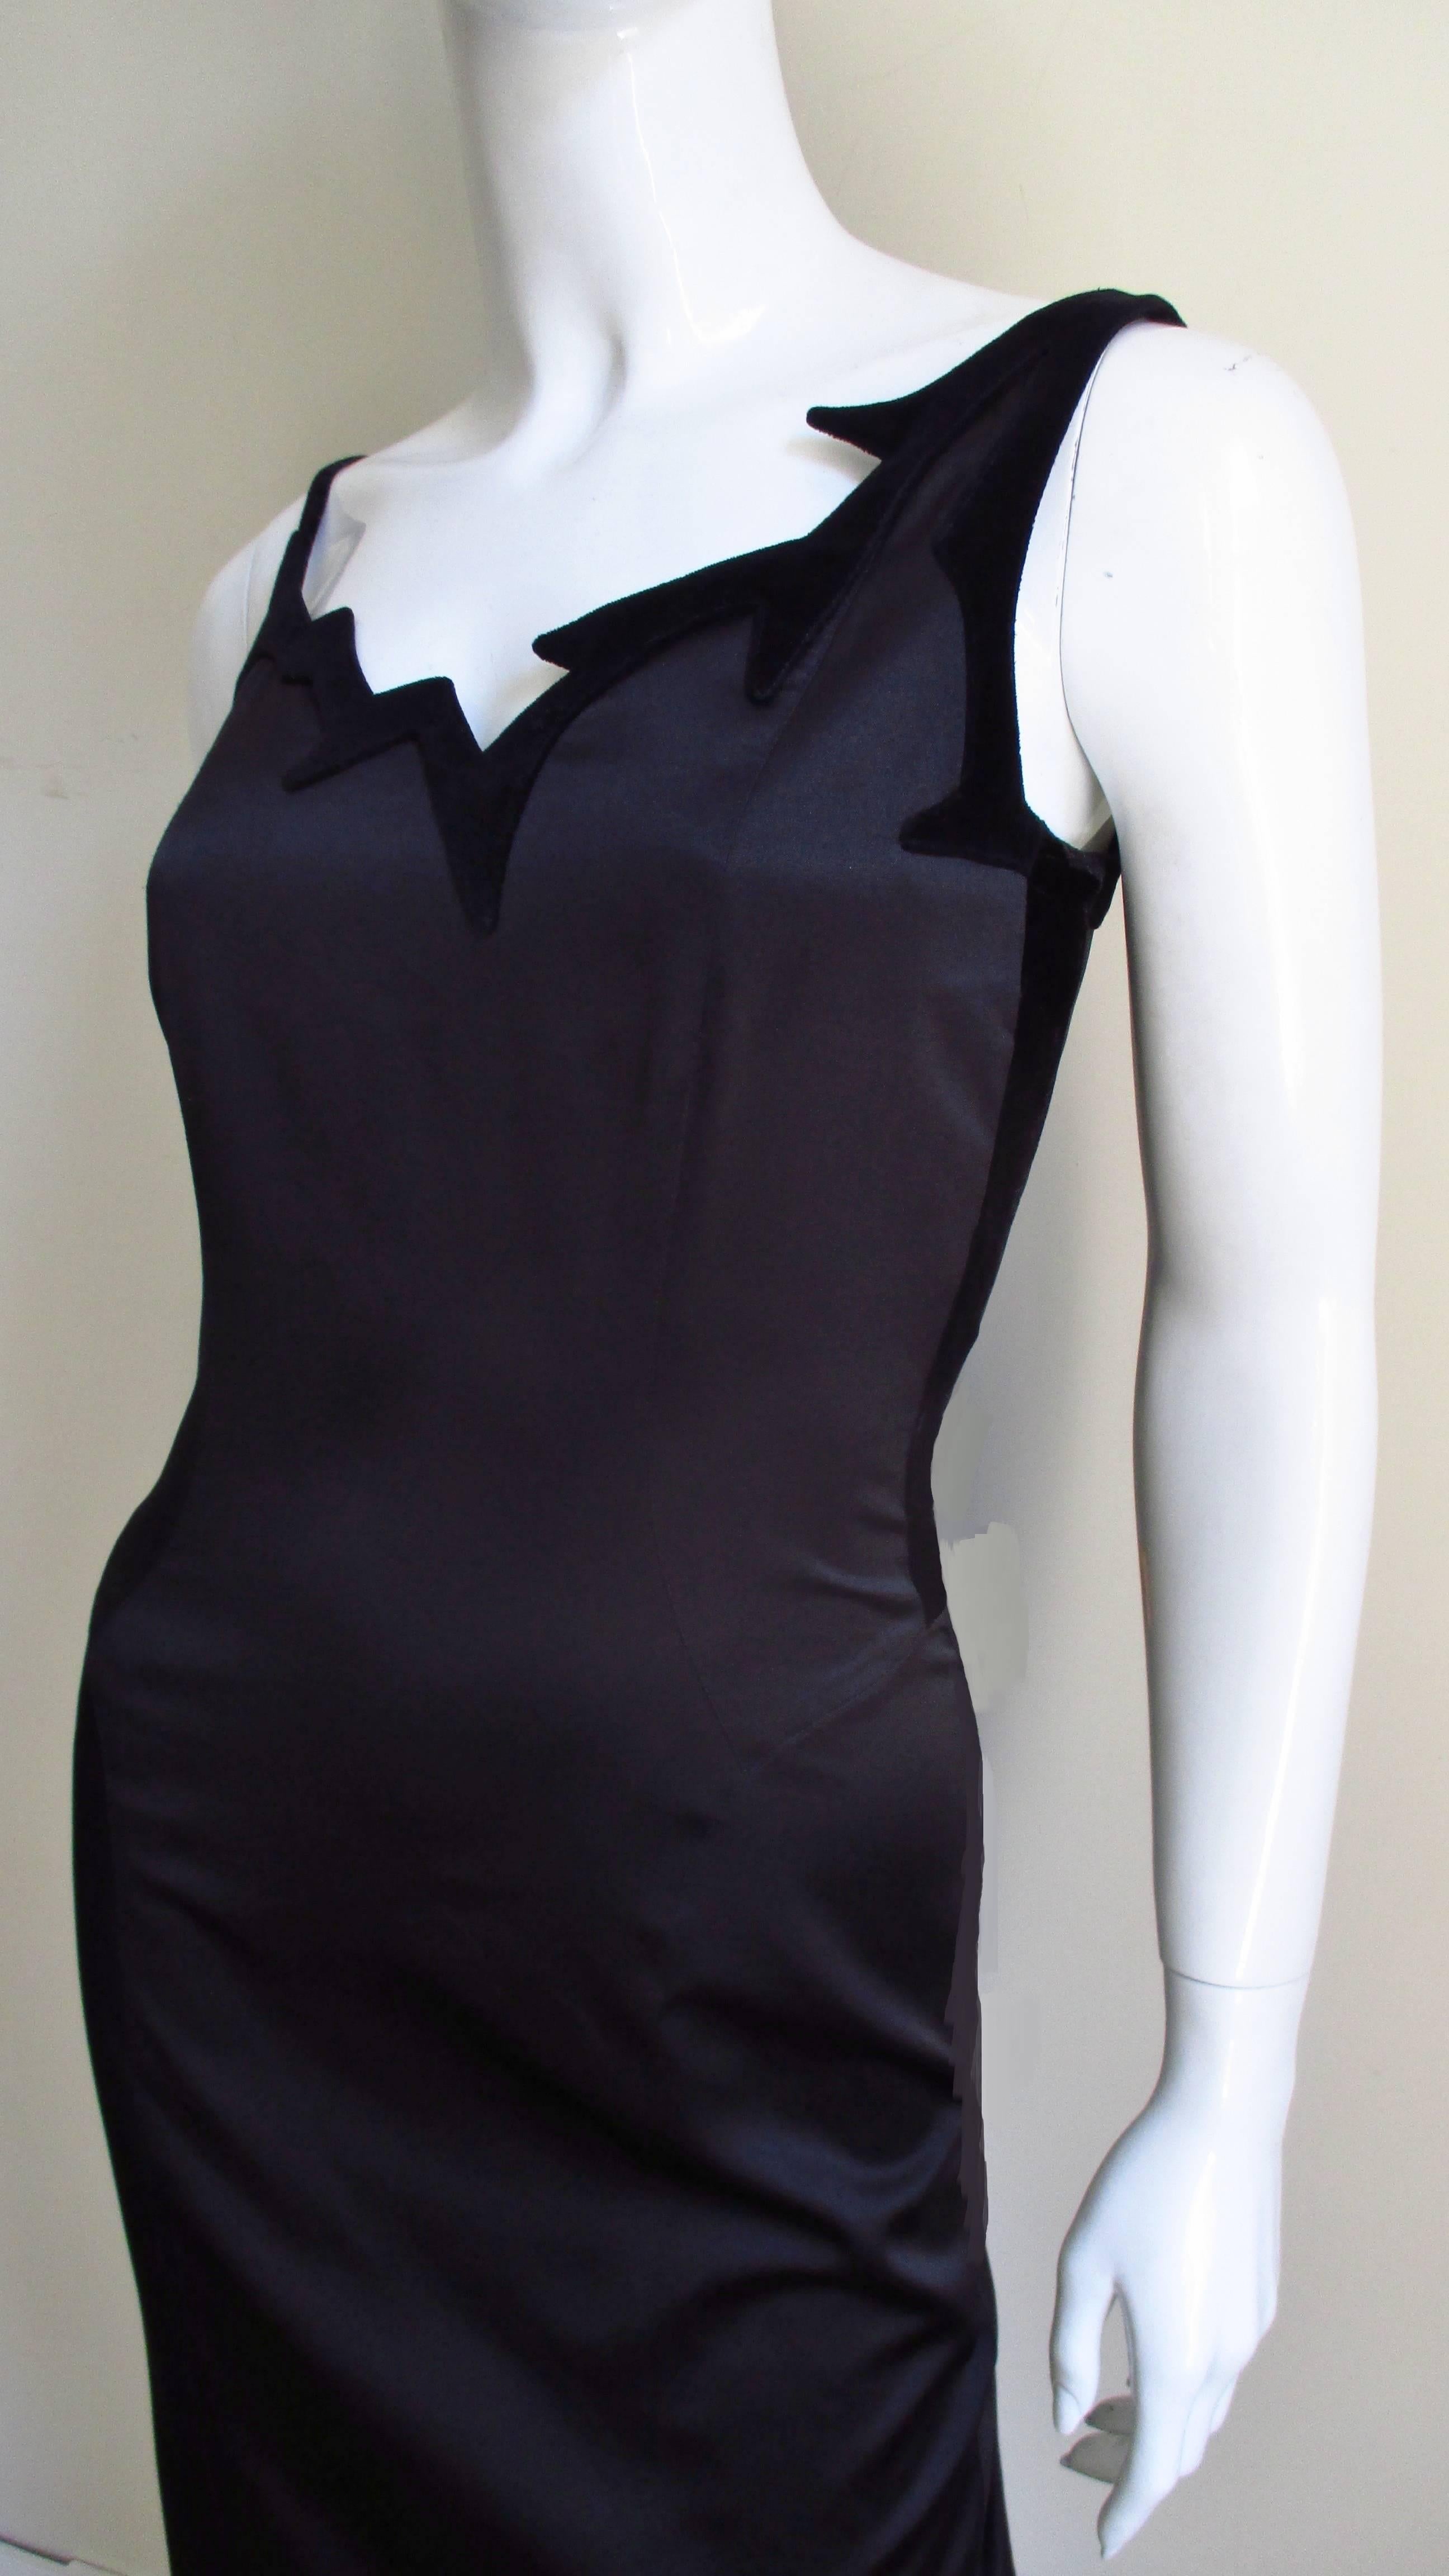 Ein fabelhaftes schwarzes Seidenkleid von Thierry Mugler. Es ist ein halb tailliertes Kleid mit einem asymmetrischen, gezackten Halsausschnitt aus schwarzem Samt und einem geraden Rockteil. Es ist vollständig mit Seide gefüttert und hat einen